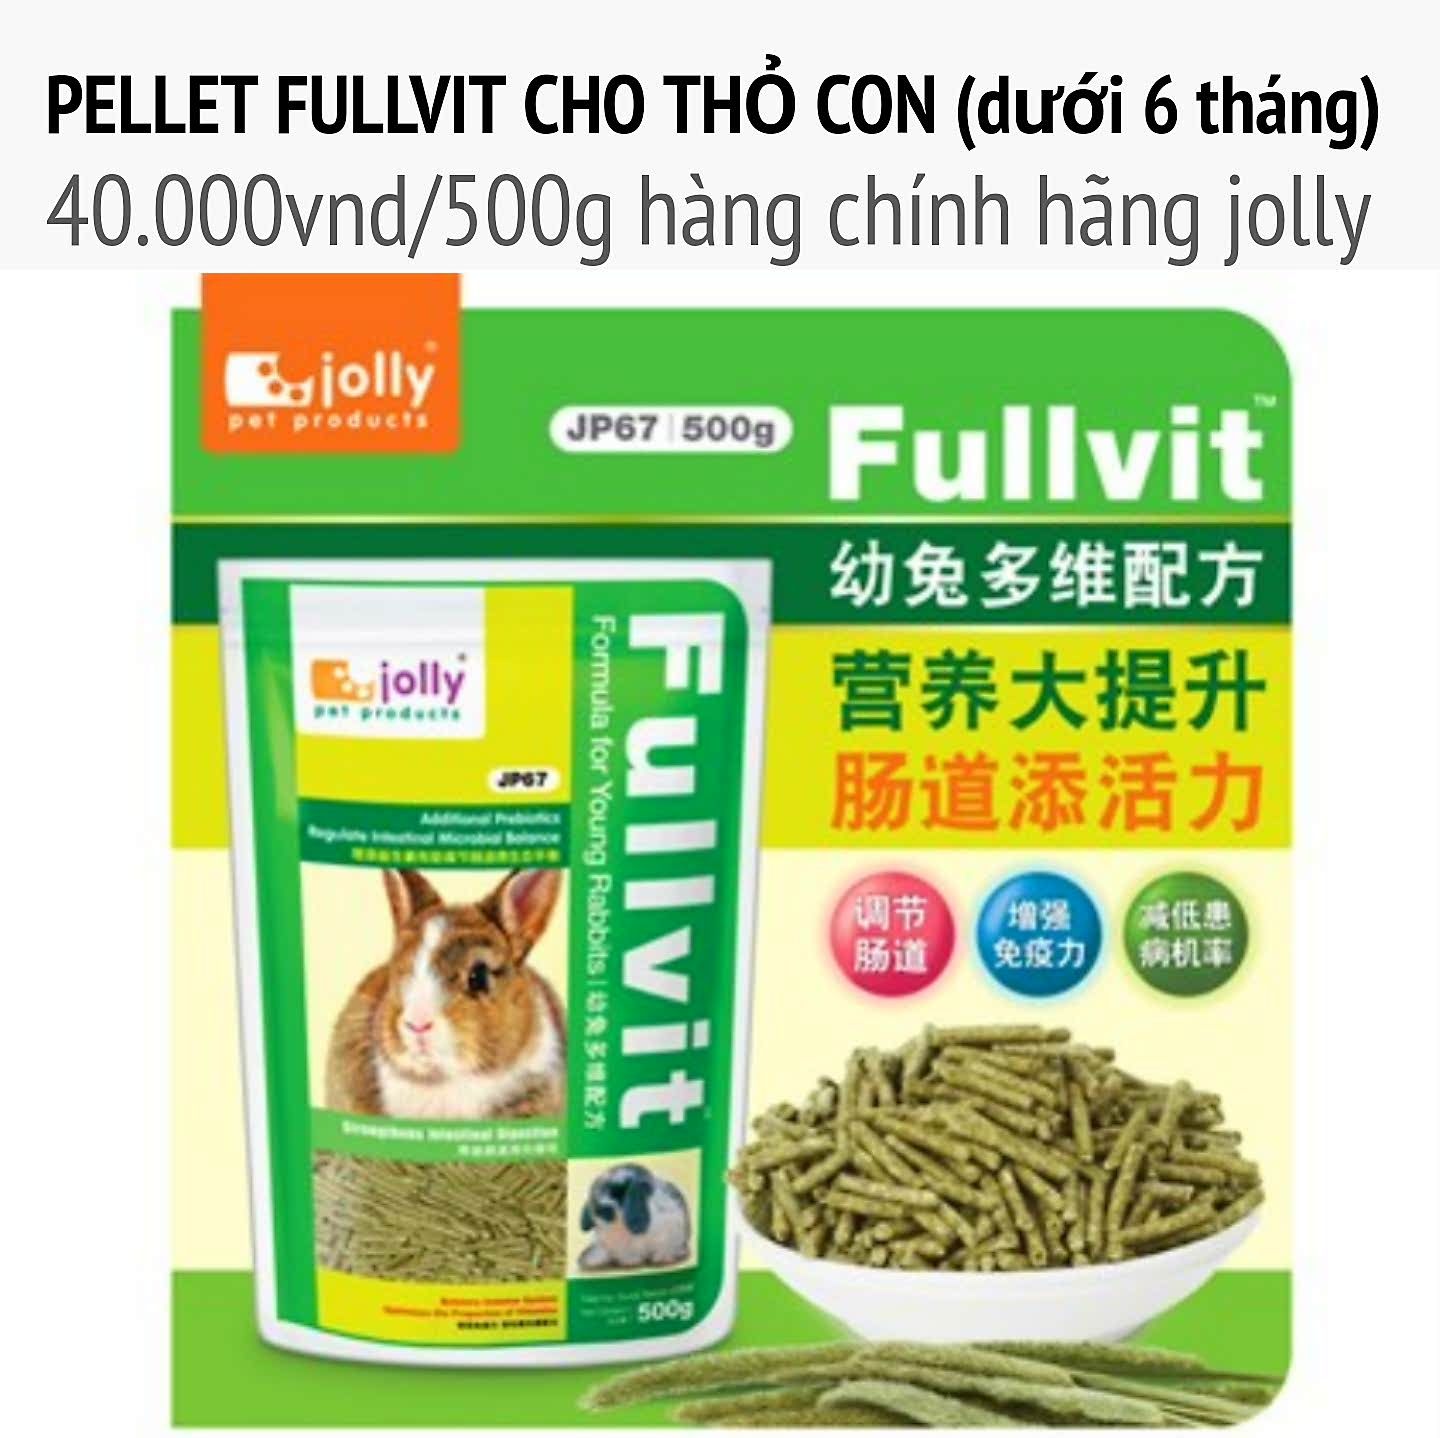 Pellet fullvit cho thỏ bọ dưới 6 tháng 500g